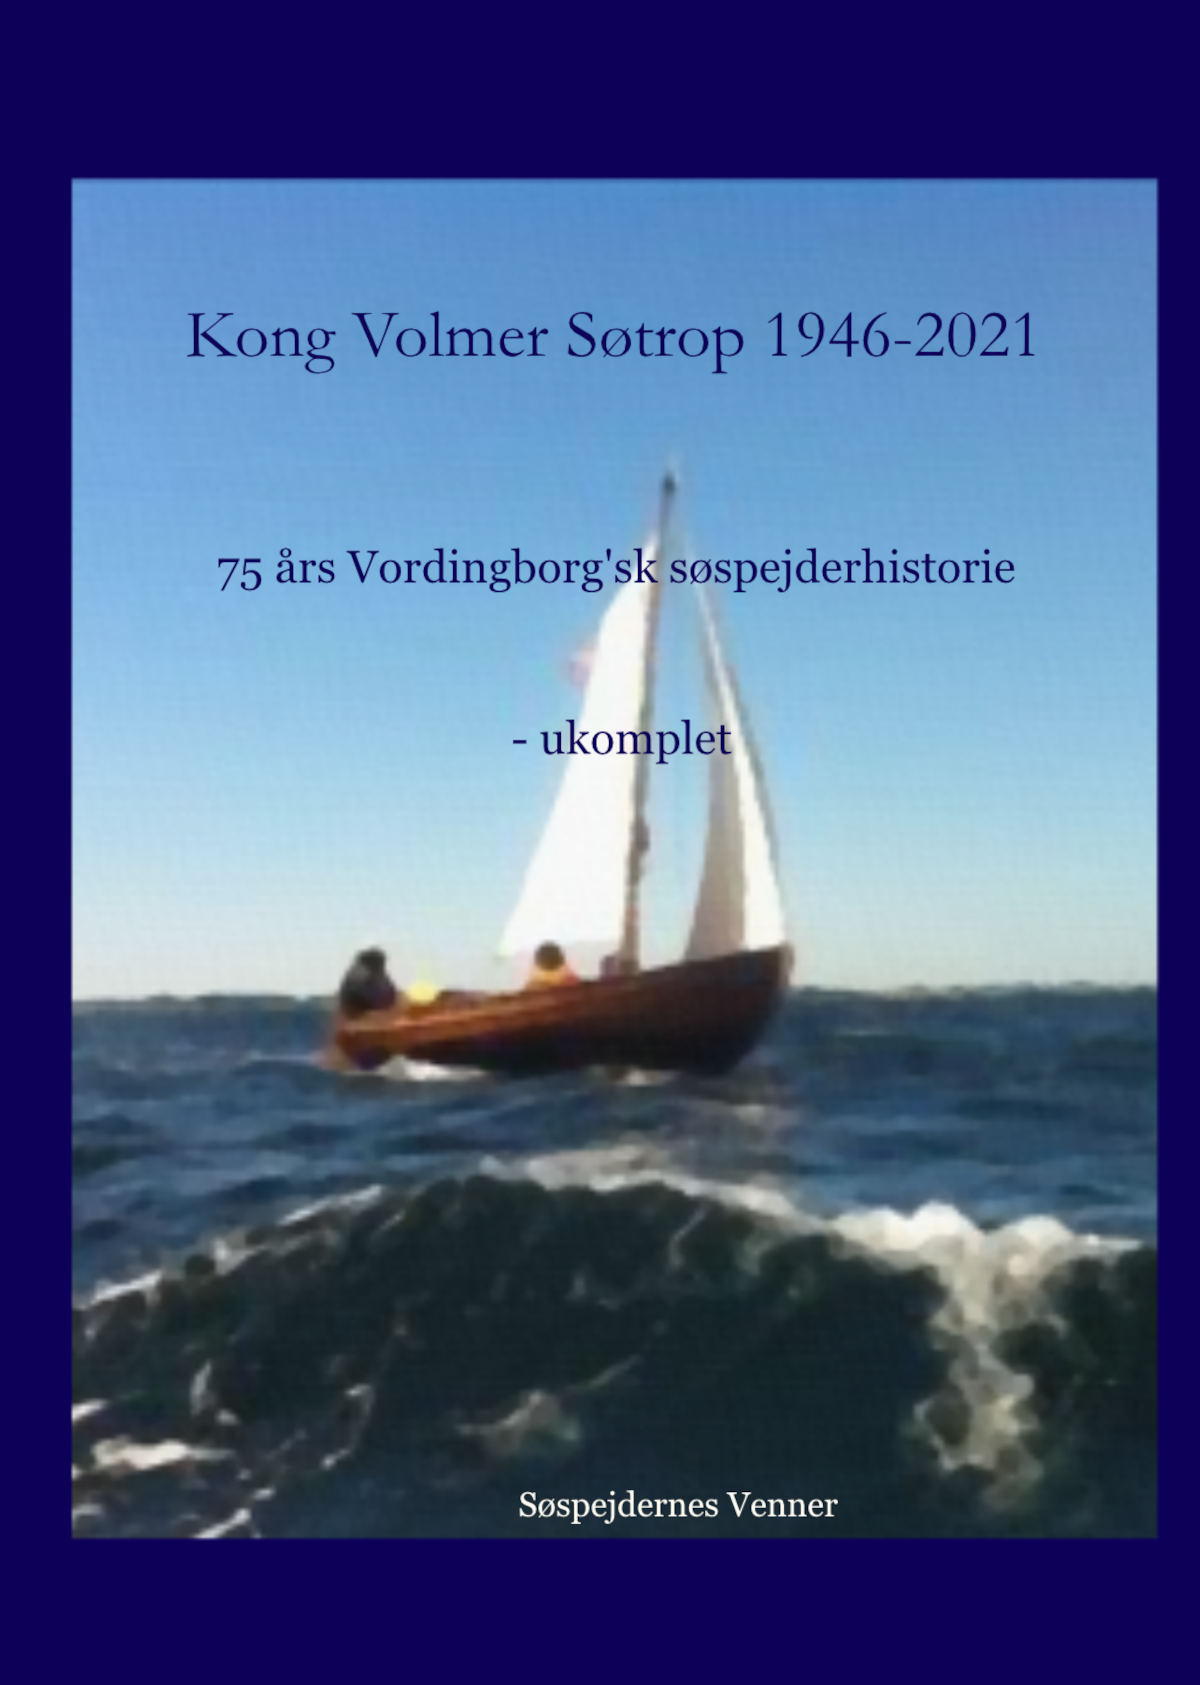 75 års Vordingborgsk søspejderhistorie